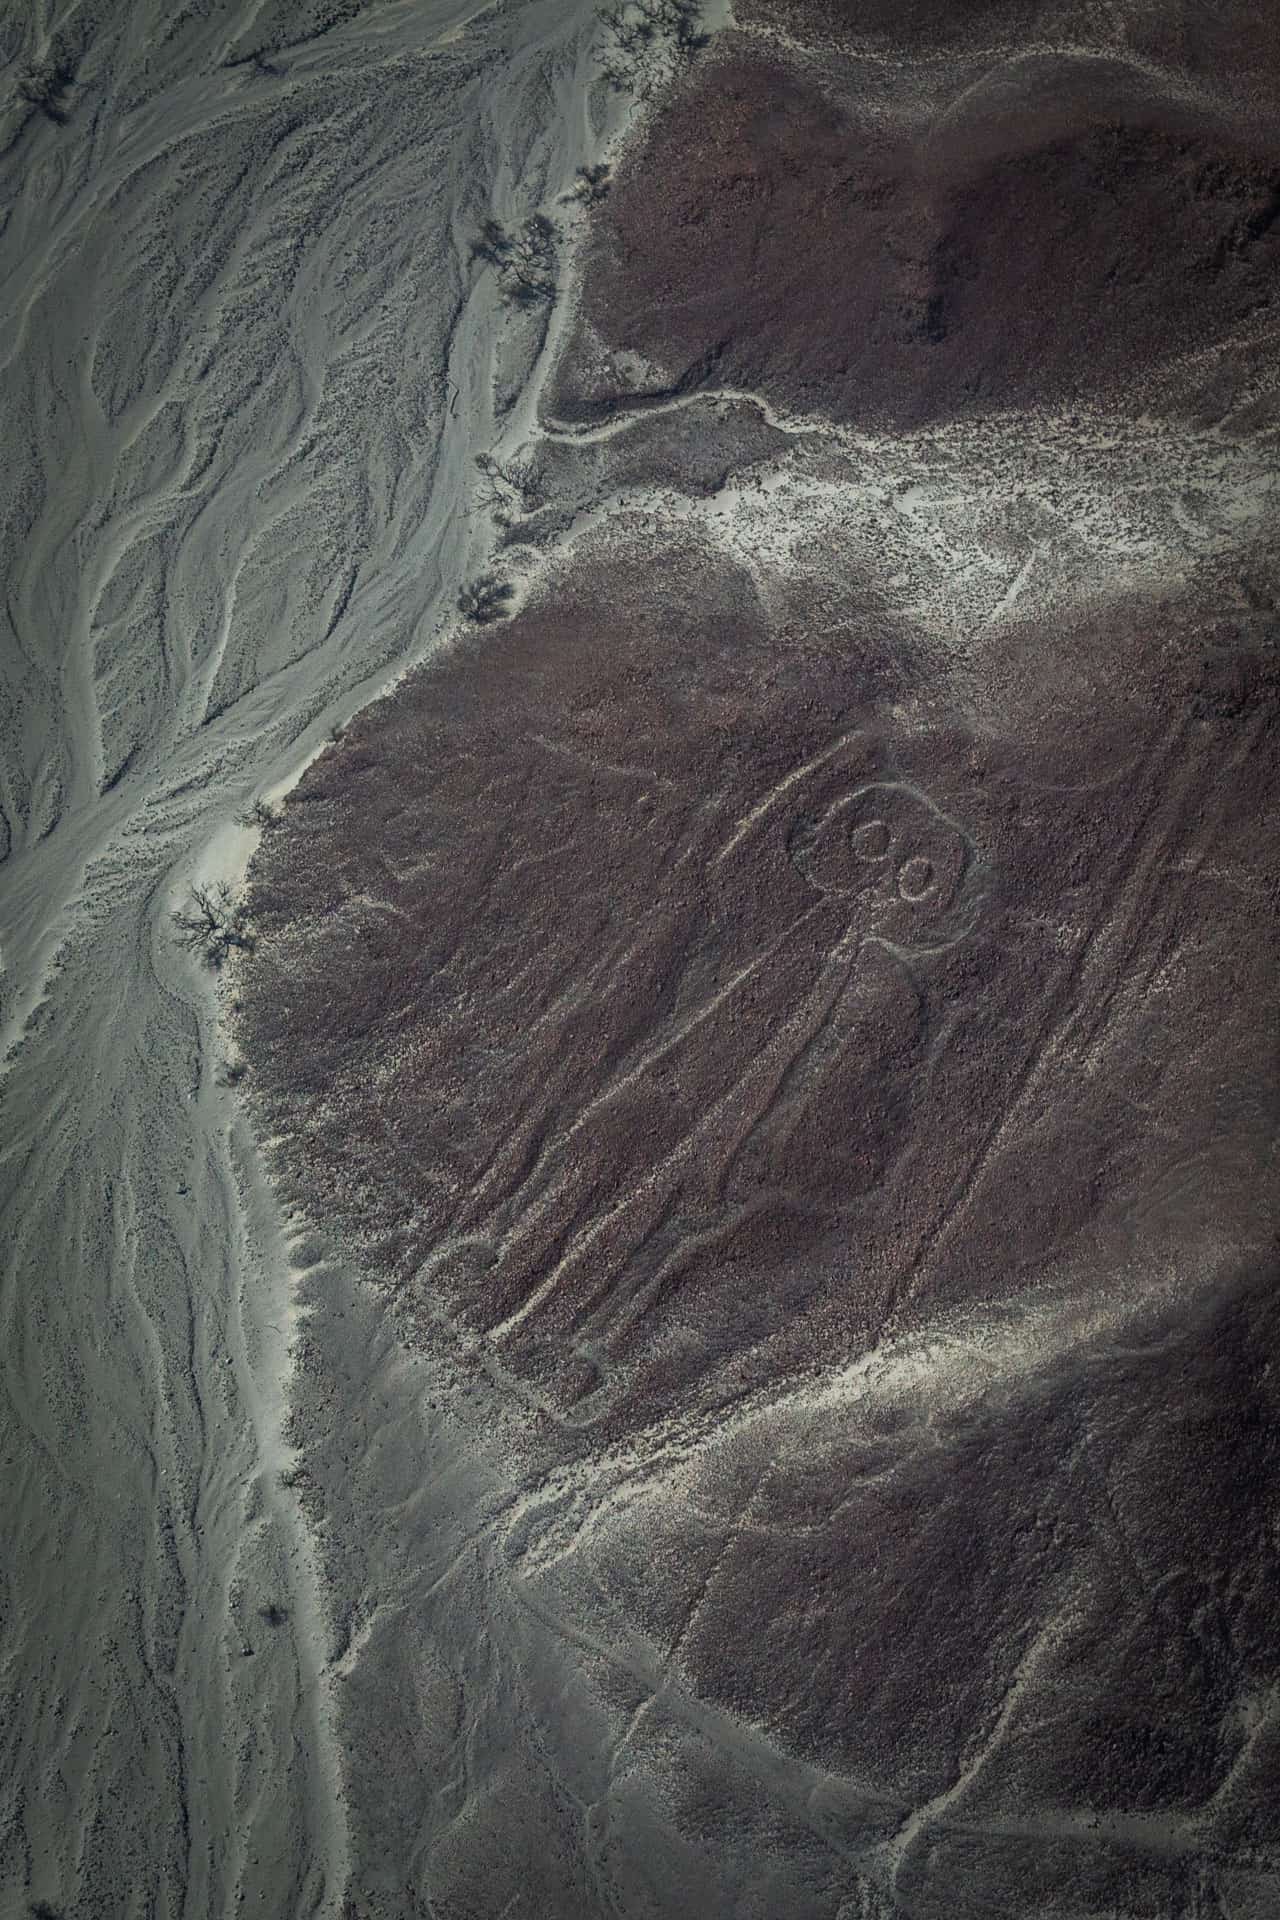 De astronaut op een berg met een arm omhoog om te zwaaien. Het mannetje is een van de Nazcalijnen.